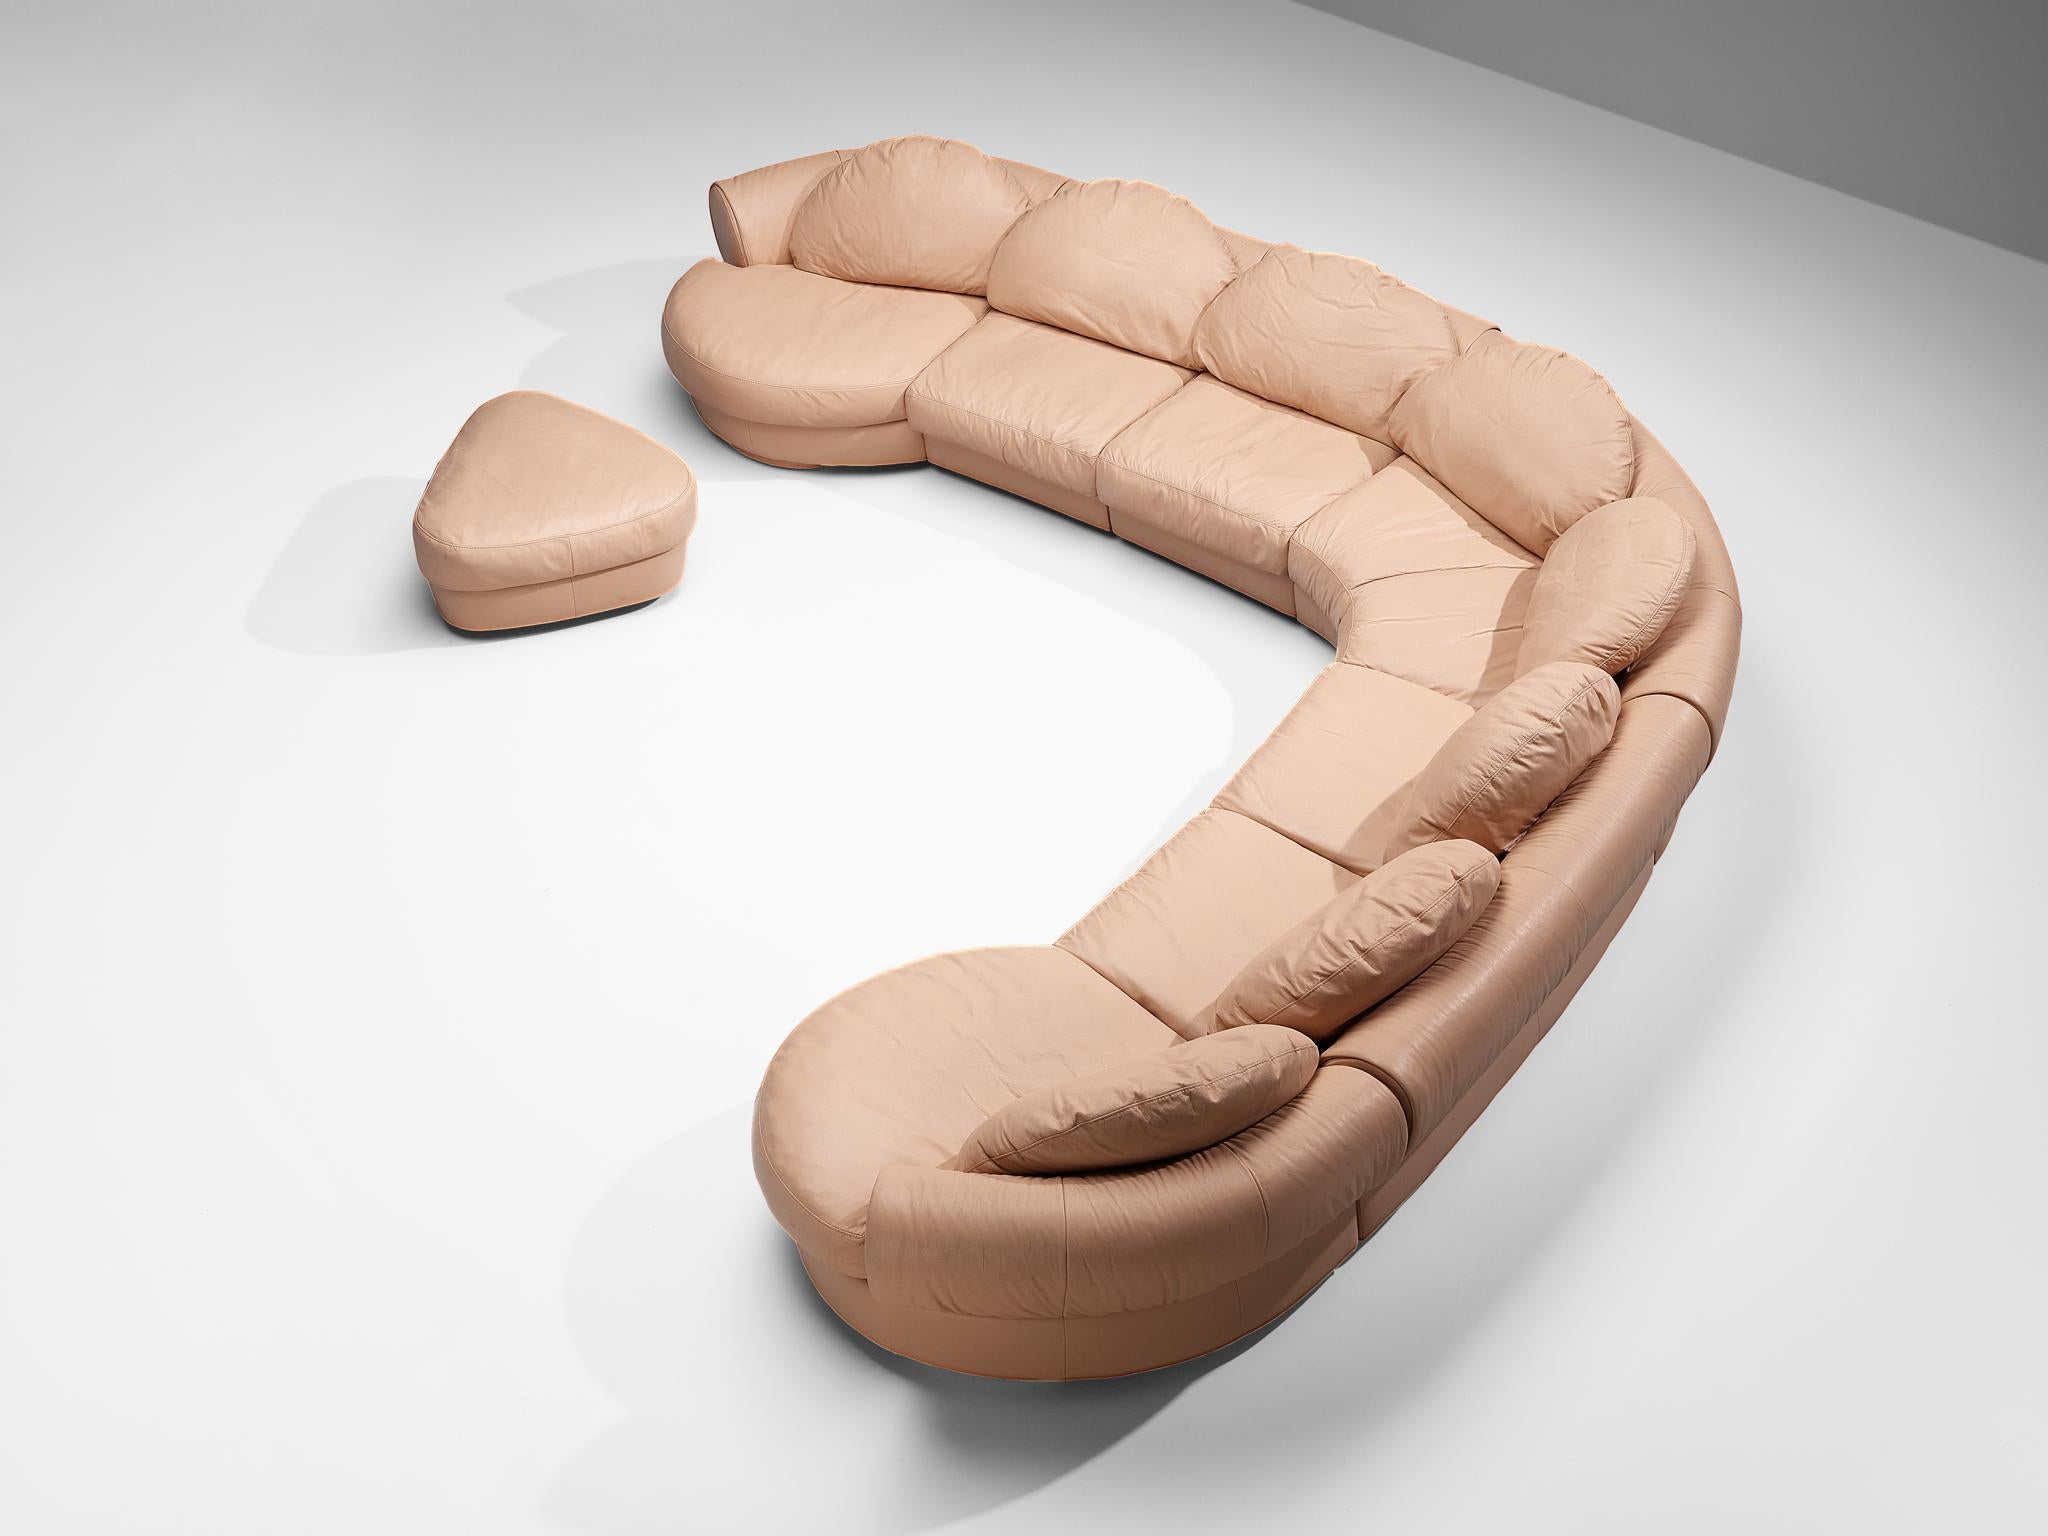 Der Wiener Werkstätte zugeschrieben, modulares Sofa, Leder, Kunststoff, Österreich, 1970er Jahre.

Dieses Sofa ist vollständig in lachsfarbenem Leder ausgeführt, das zu einem einheitlichen Look beiträgt. Die Konstruktion besteht aus sieben Elementen